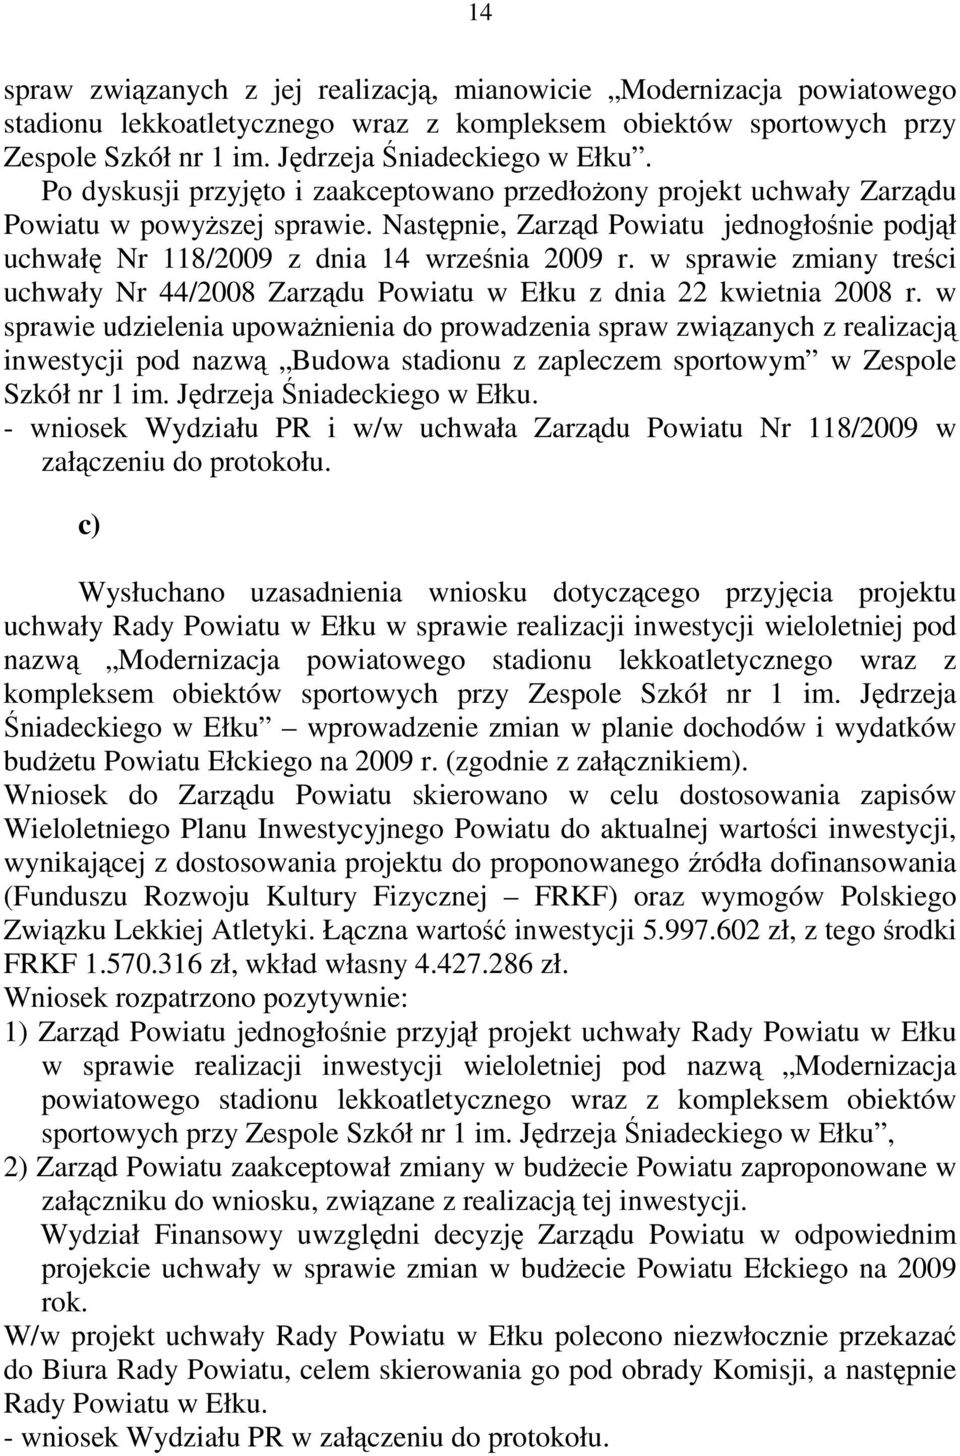 w sprawie zmiany treści uchwały Nr 44/2008 Zarządu Powiatu w Ełku z dnia 22 kwietnia 2008 r.